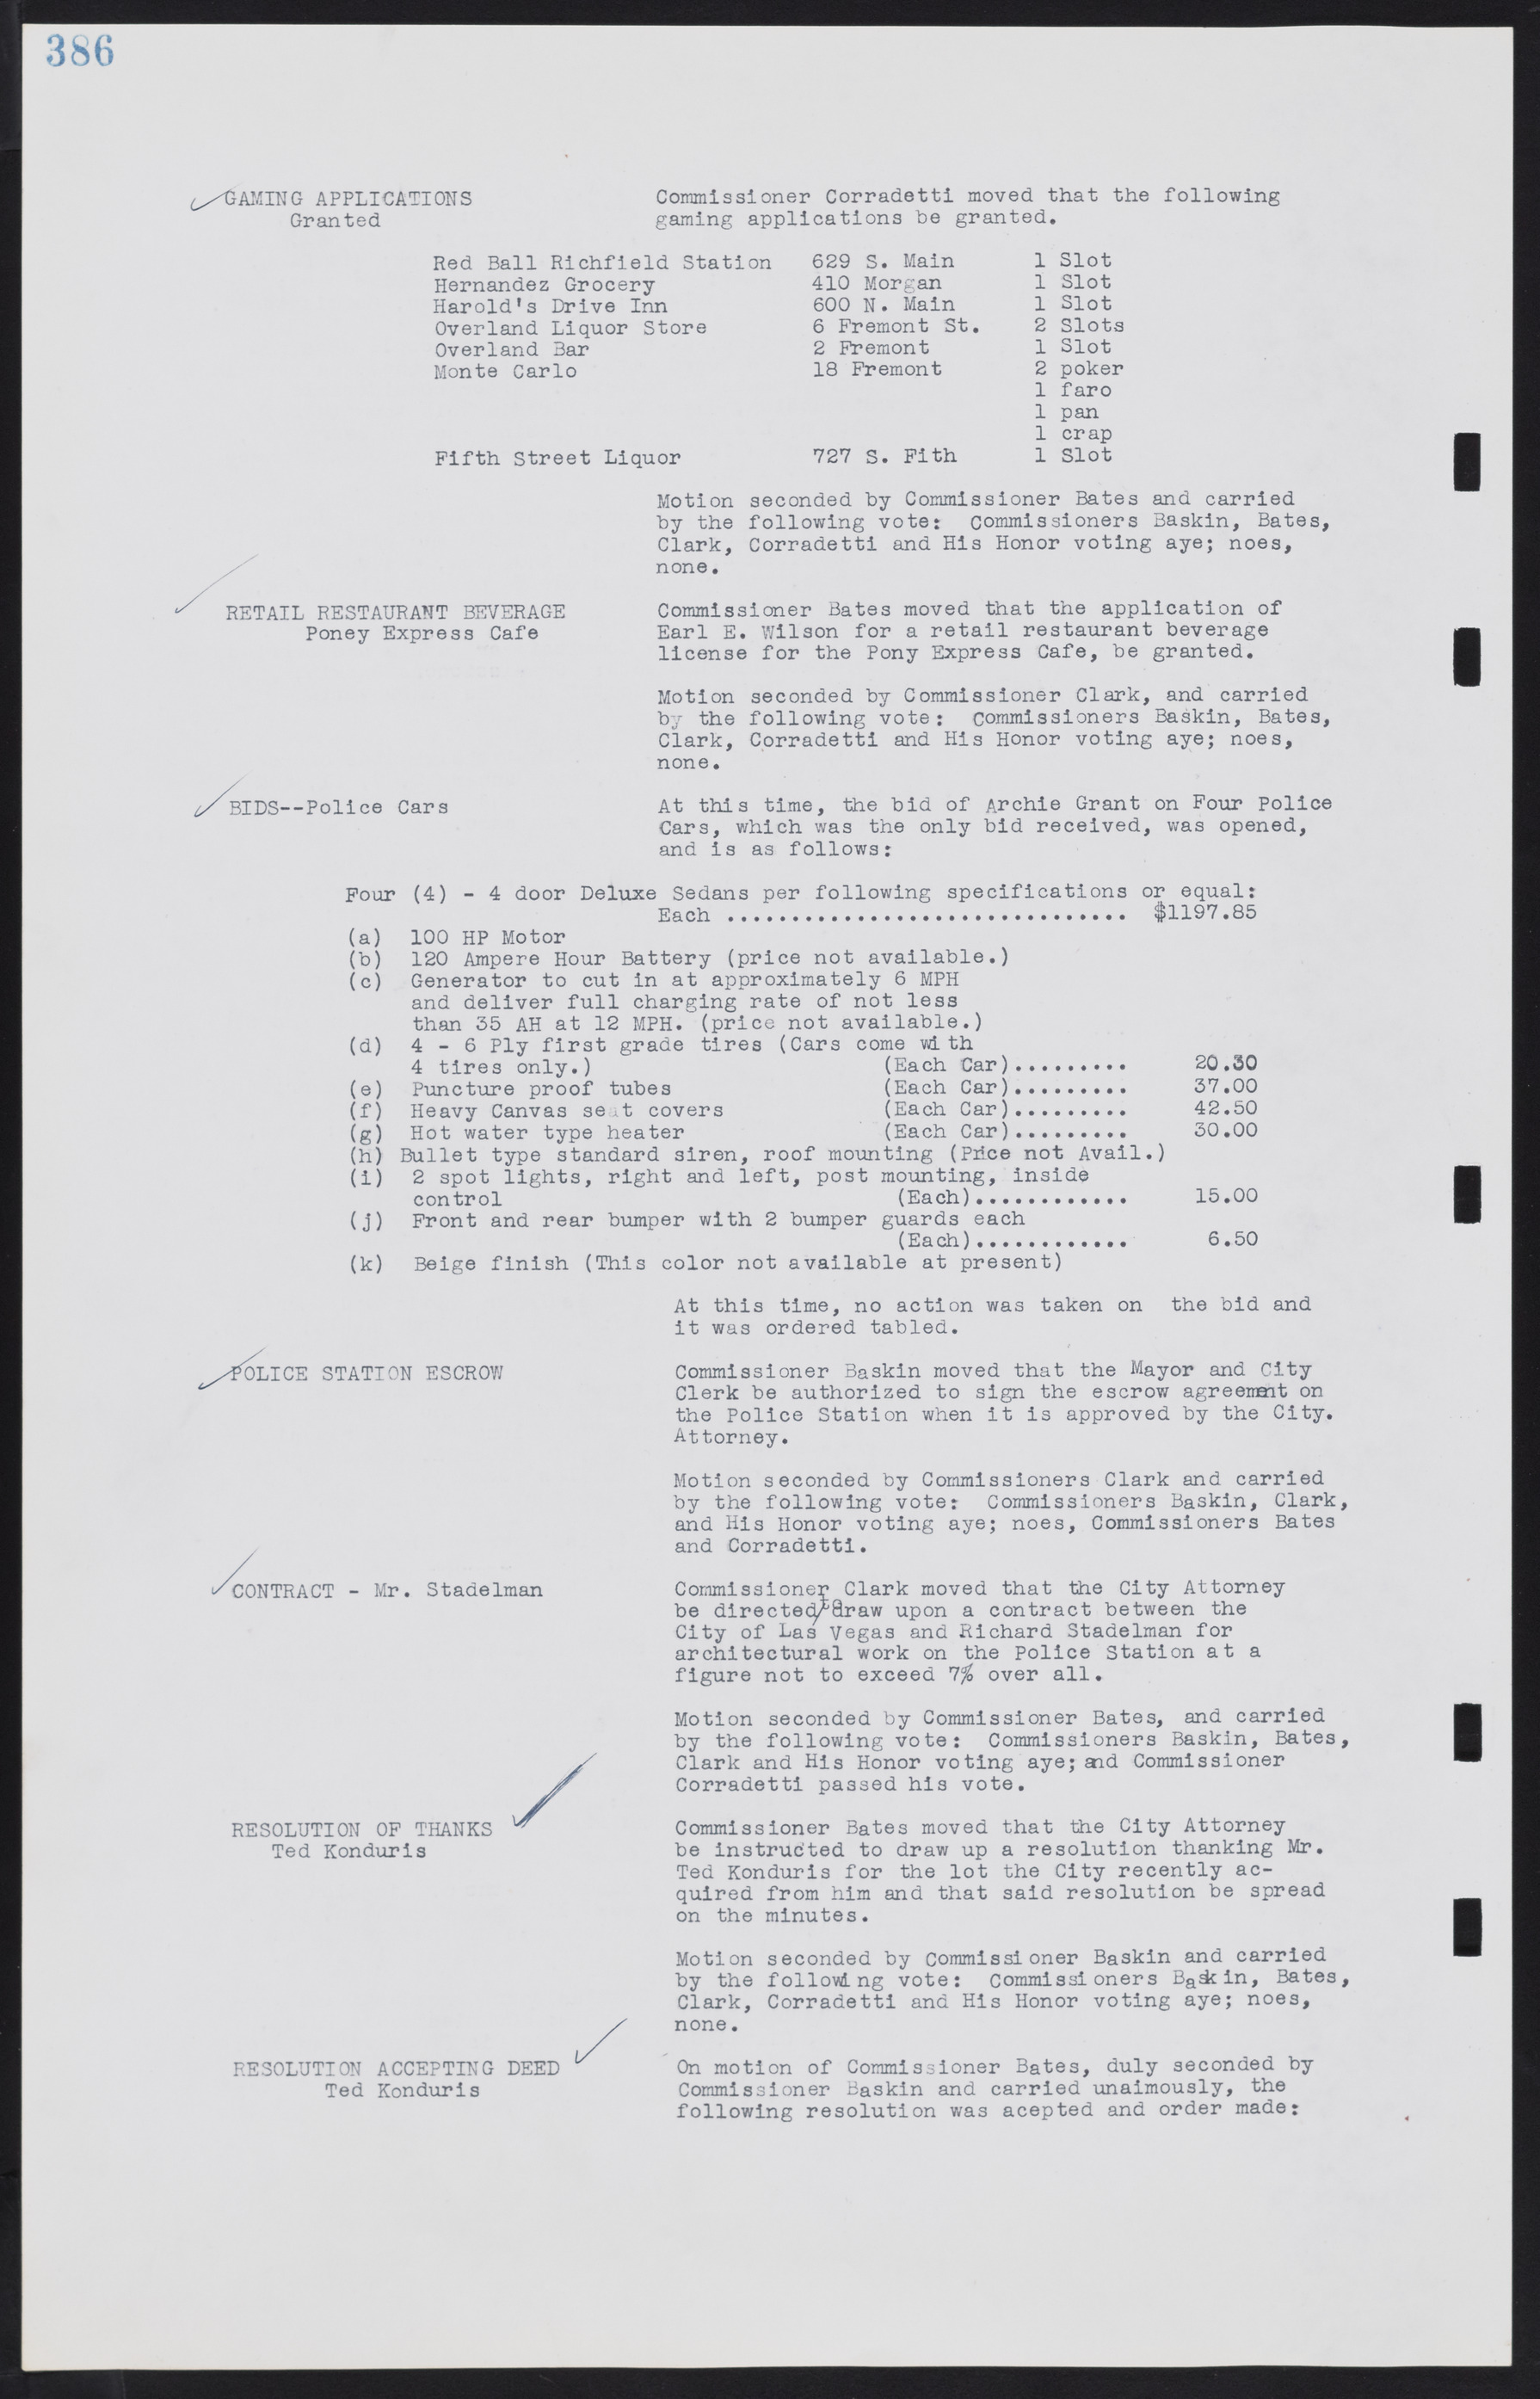 Las Vegas City Commission Minutes, August 11, 1942 to December 30, 1946, lvc000005-413